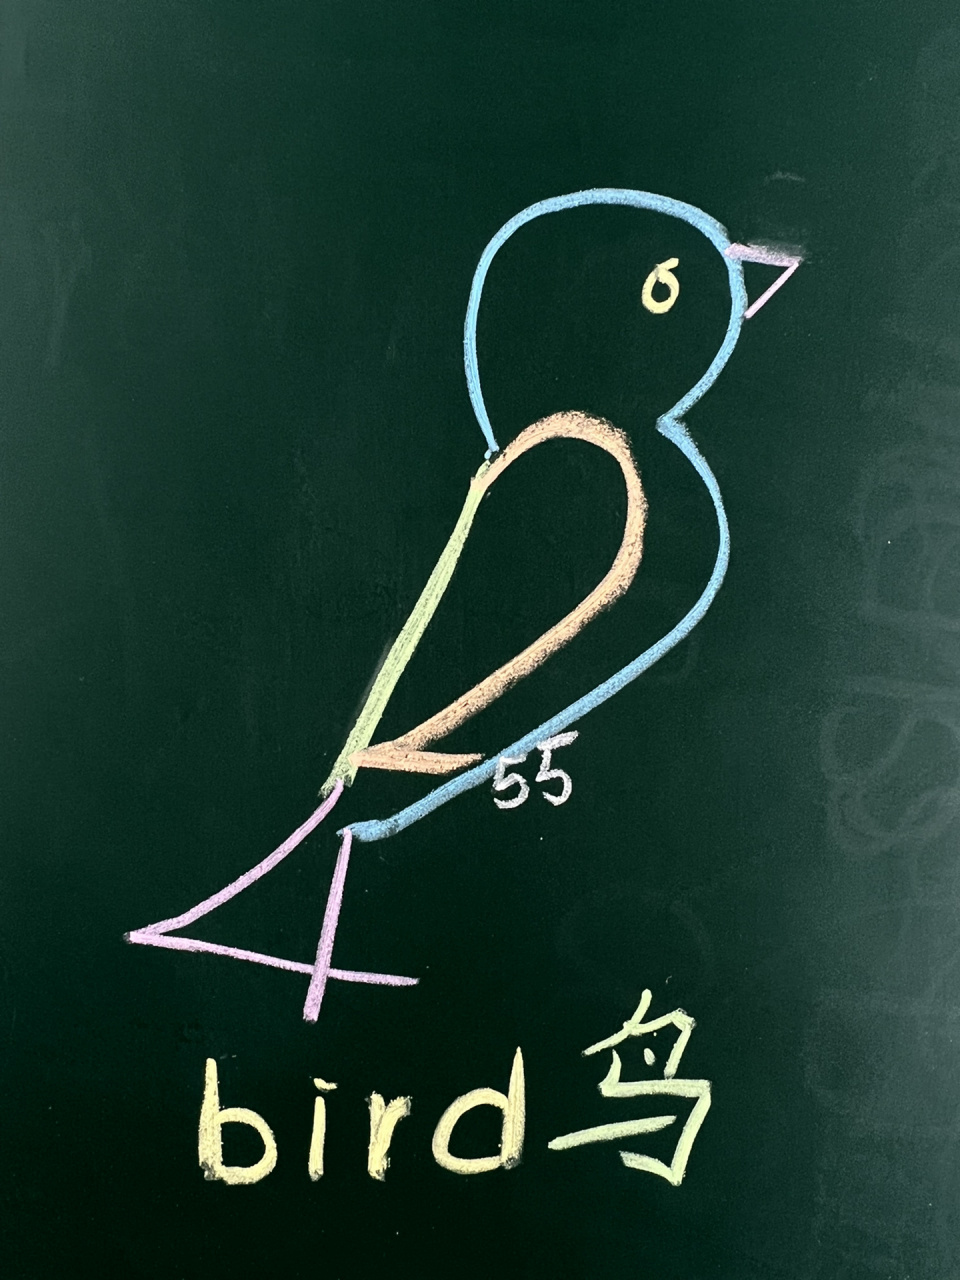 一年级数学小鸟图案图片